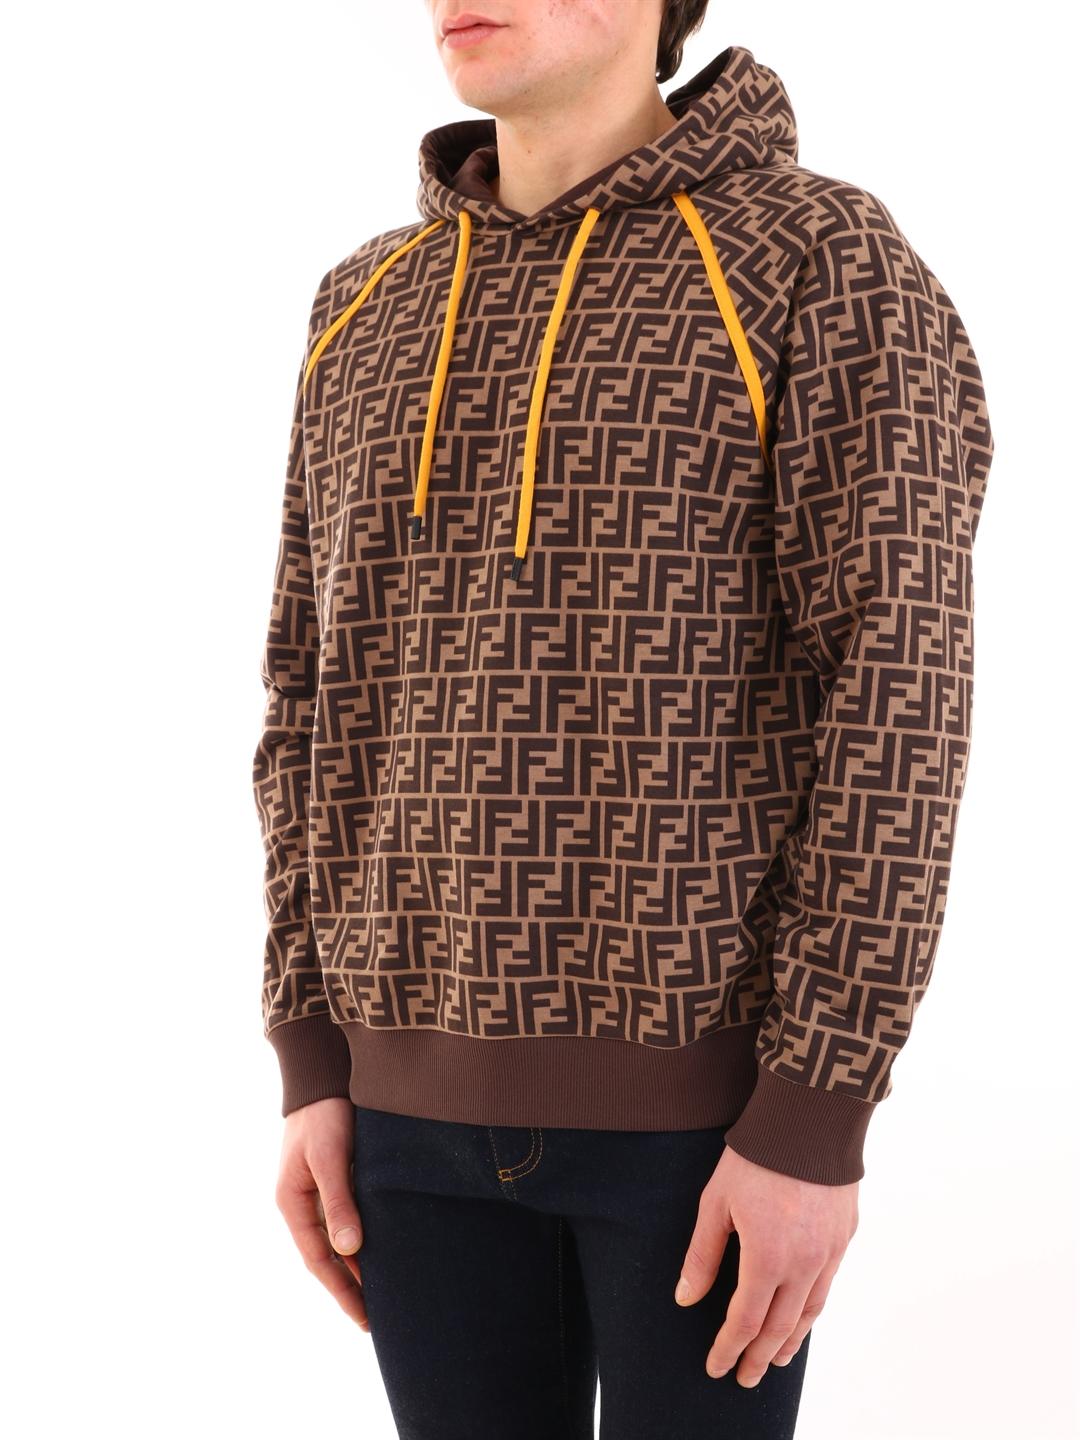 fendi brown hoodie